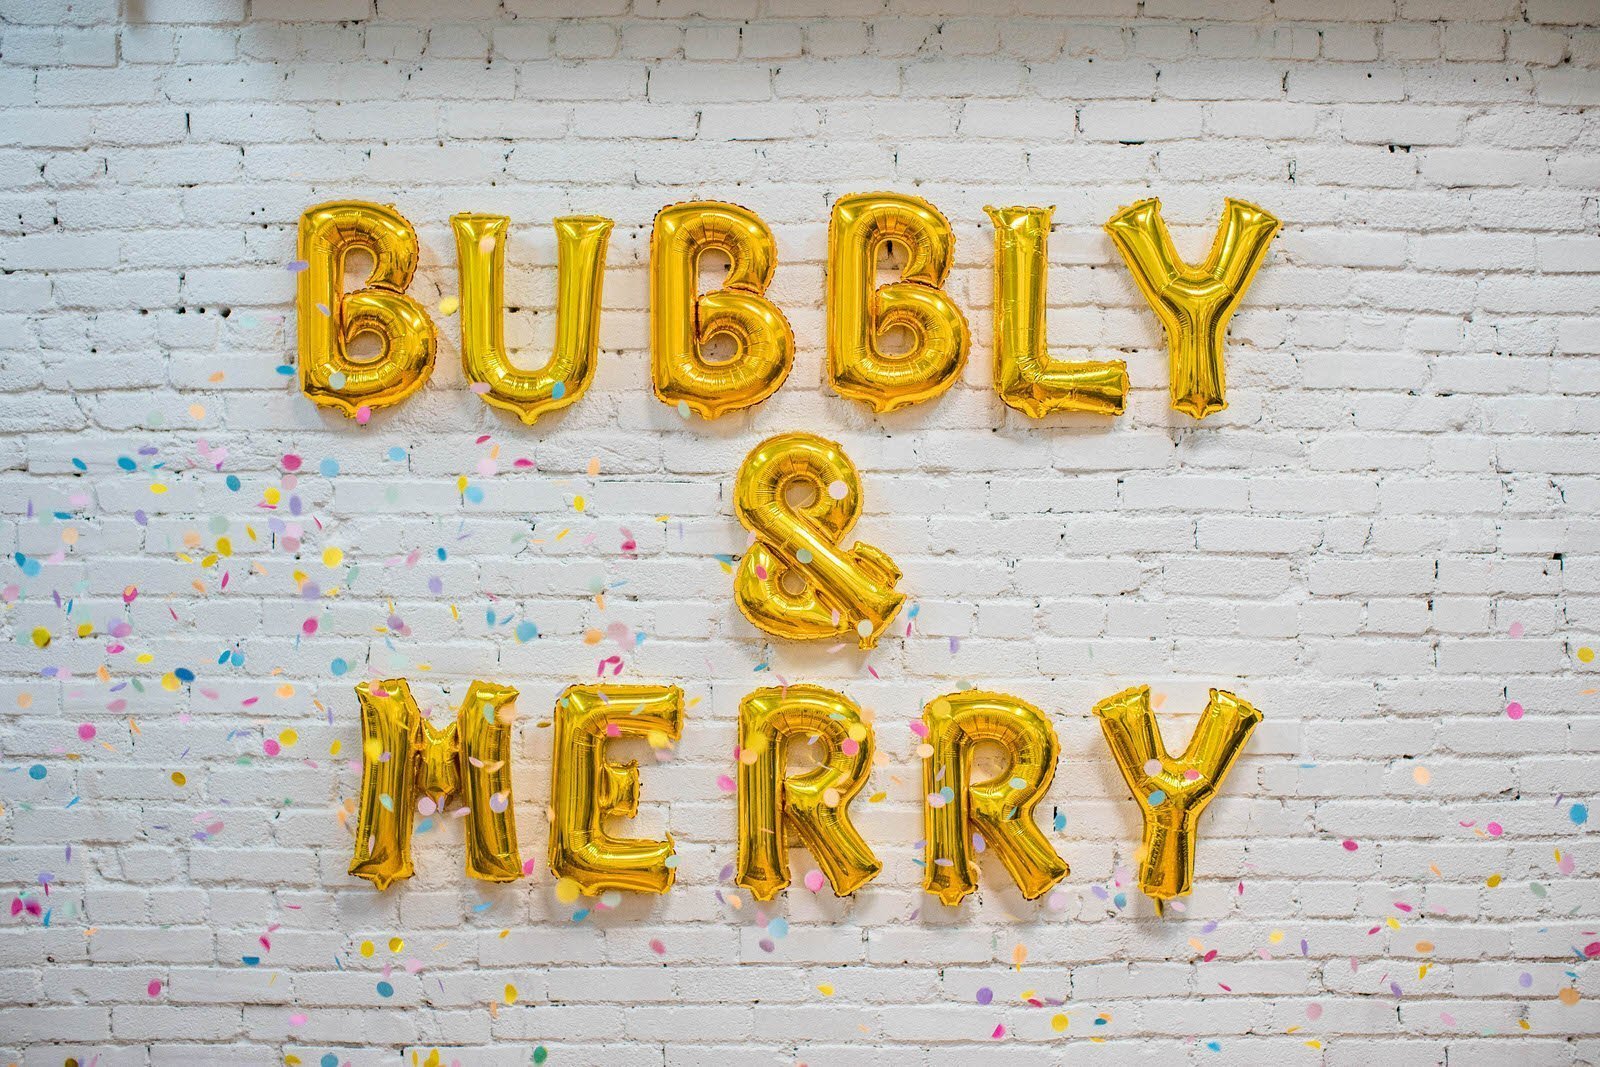 Bubbly & Merry